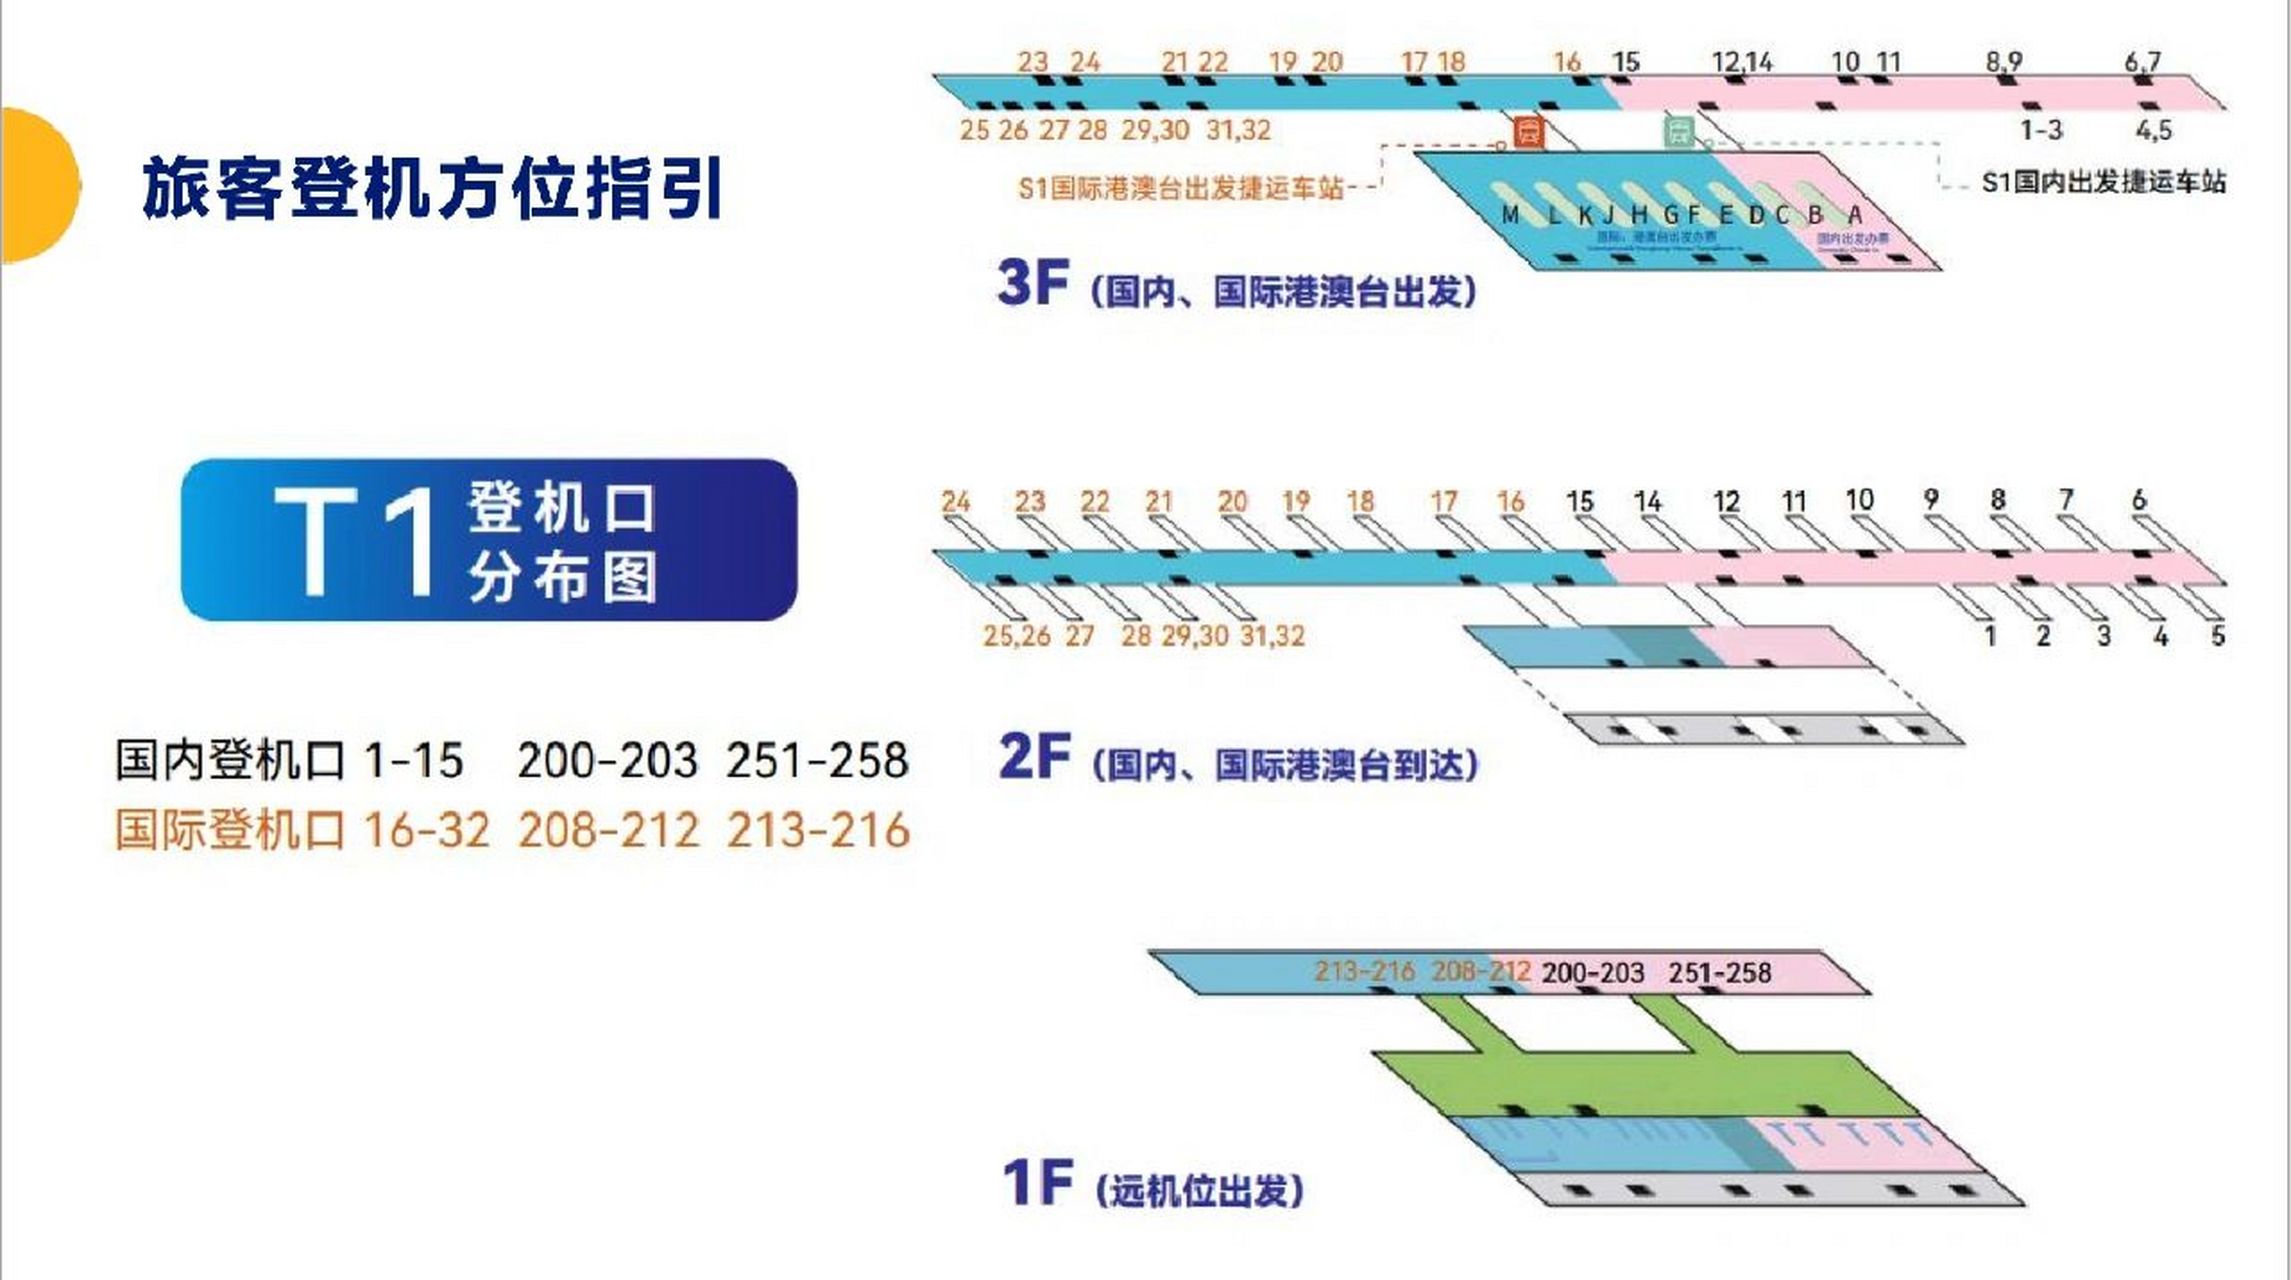 浦东机场平面图2号图片